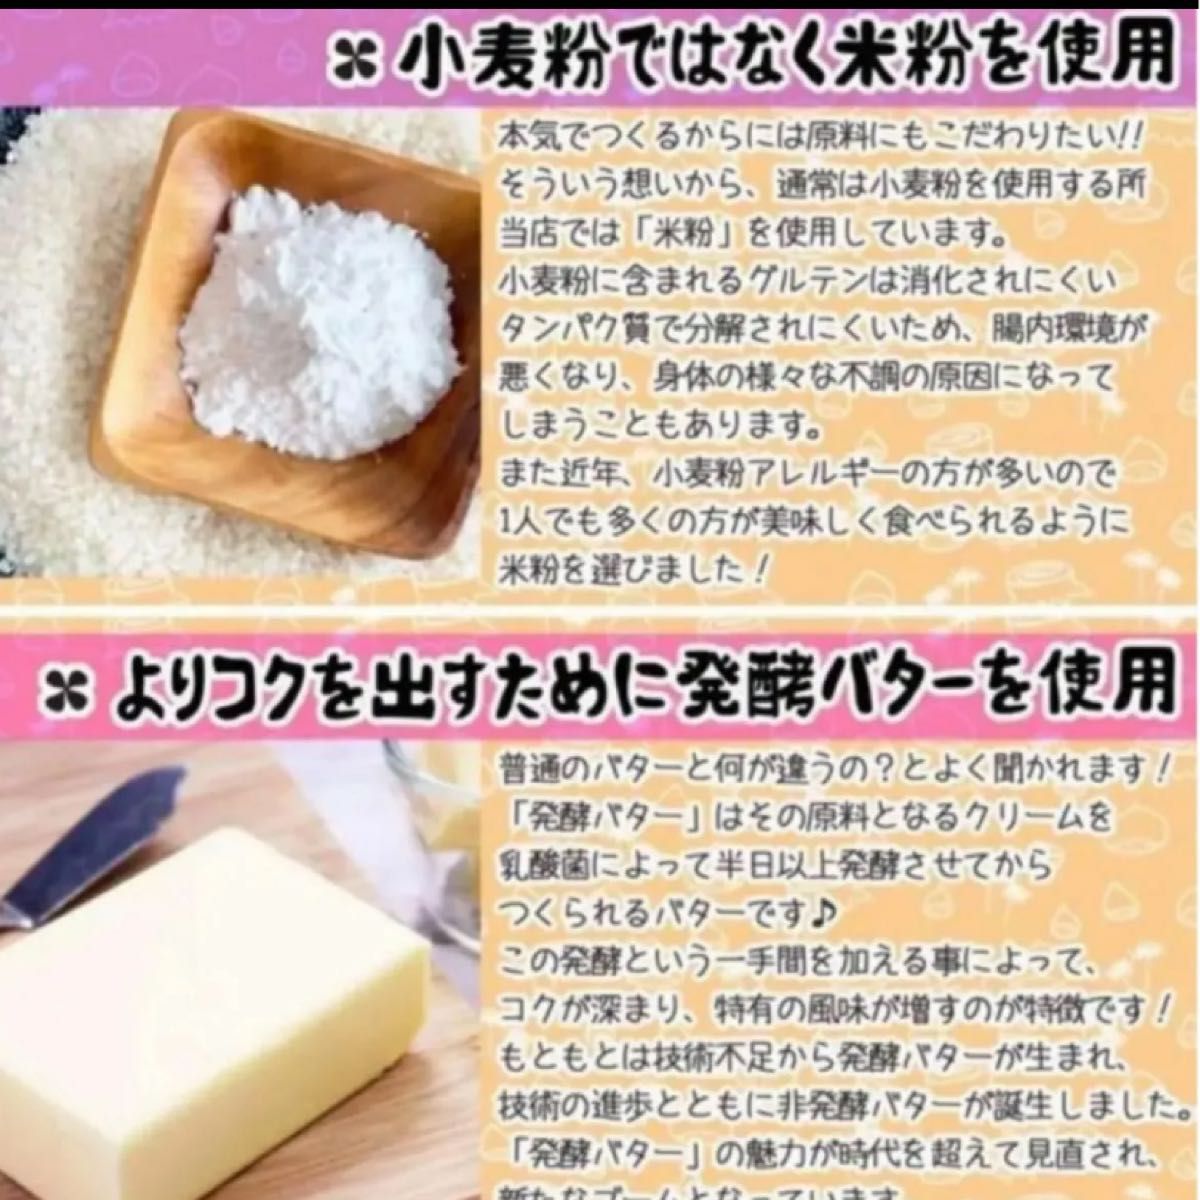 【自宅用】和菓子 3種 10個セット 栗 どら焼き 栗最中 国産原料 厳選素材